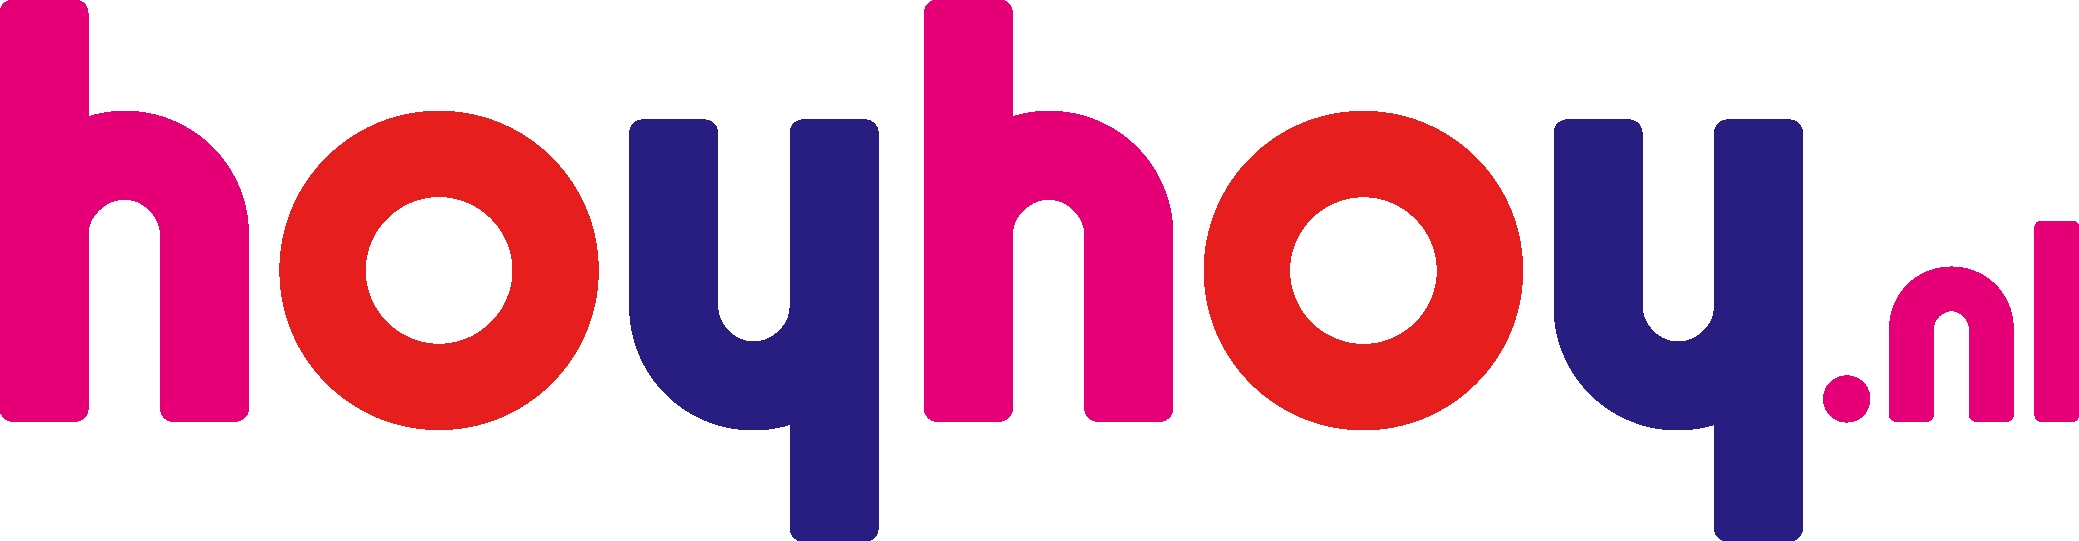 logo Hoyhoy.nl